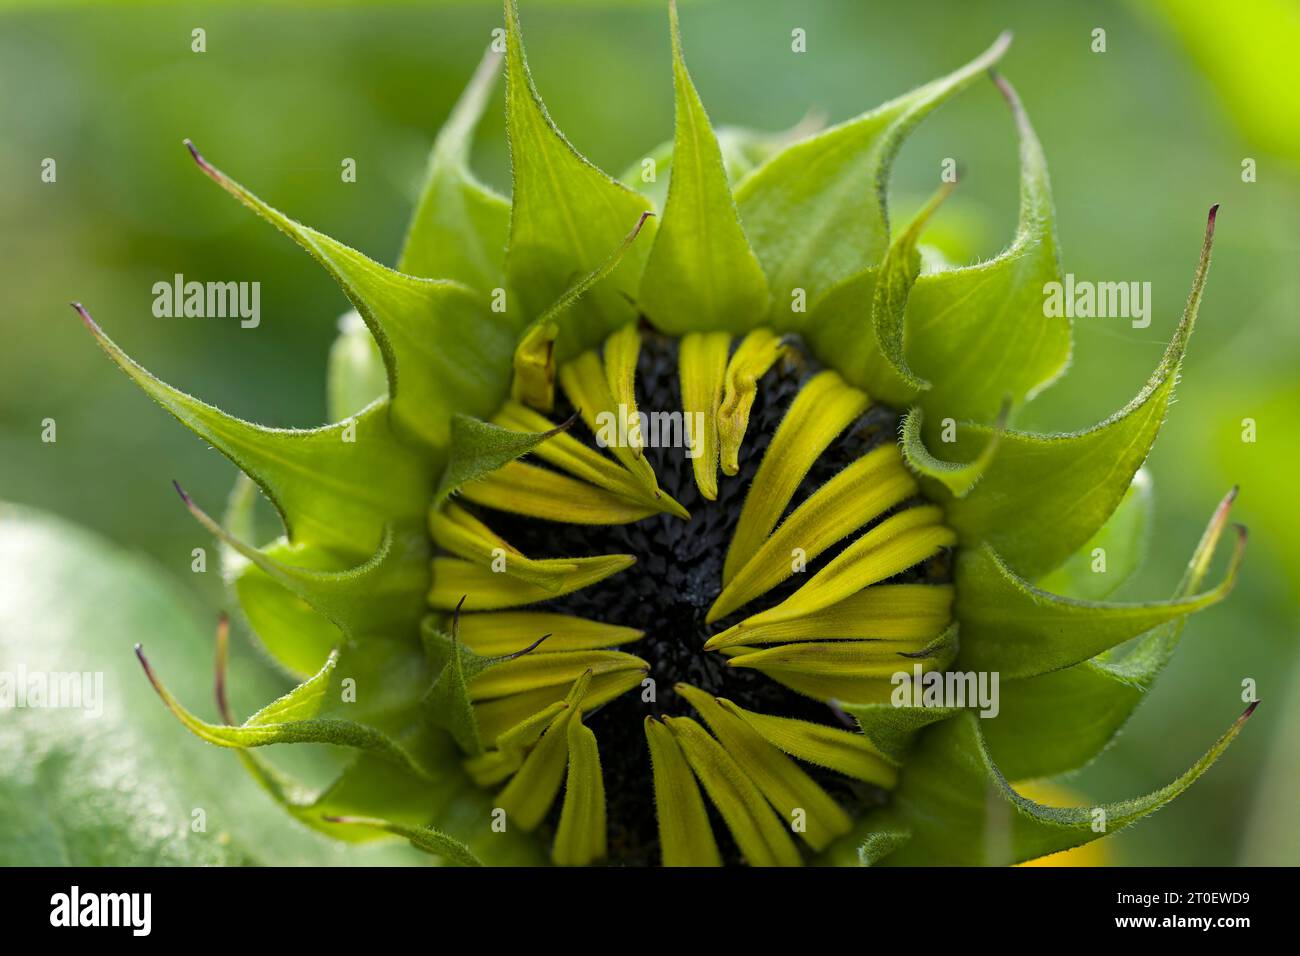 Primo piano di un fiore di girasole (Helianthus annuus), testa di fiore in erba con bratti verdi e piccoli petali gialli, Germania Foto Stock